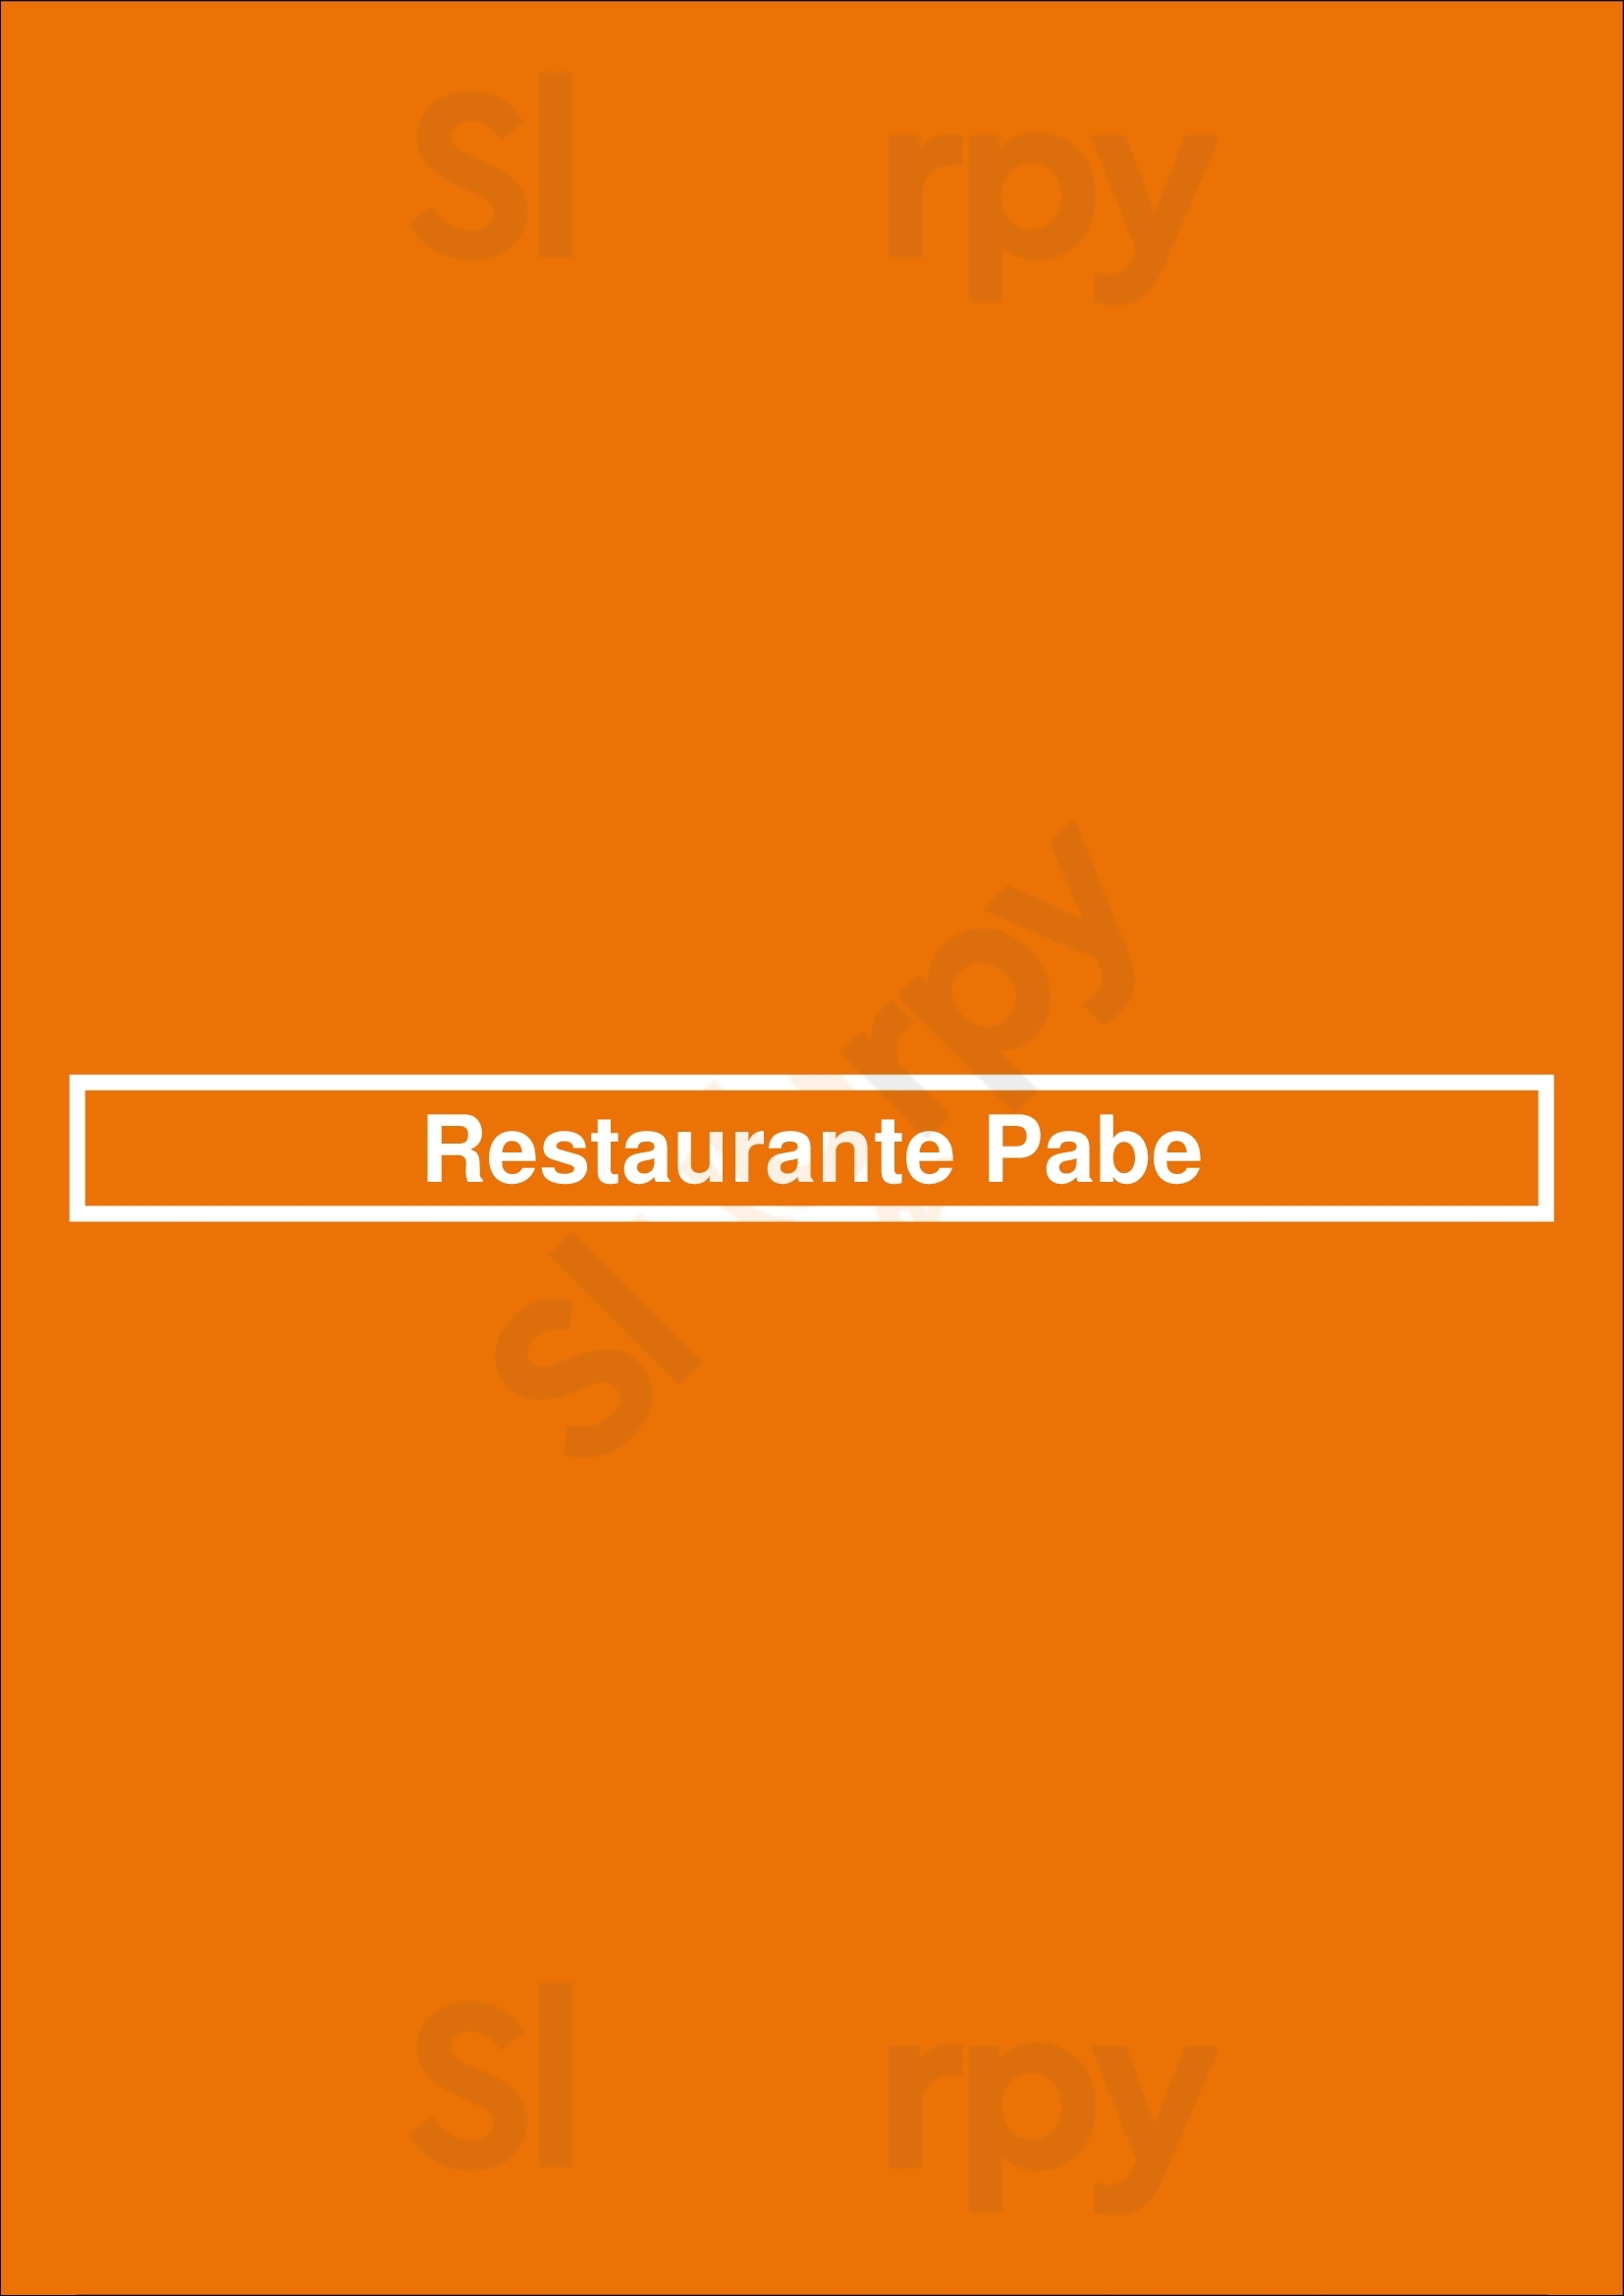 Restaurante Pabe Lisboa Menu - 1